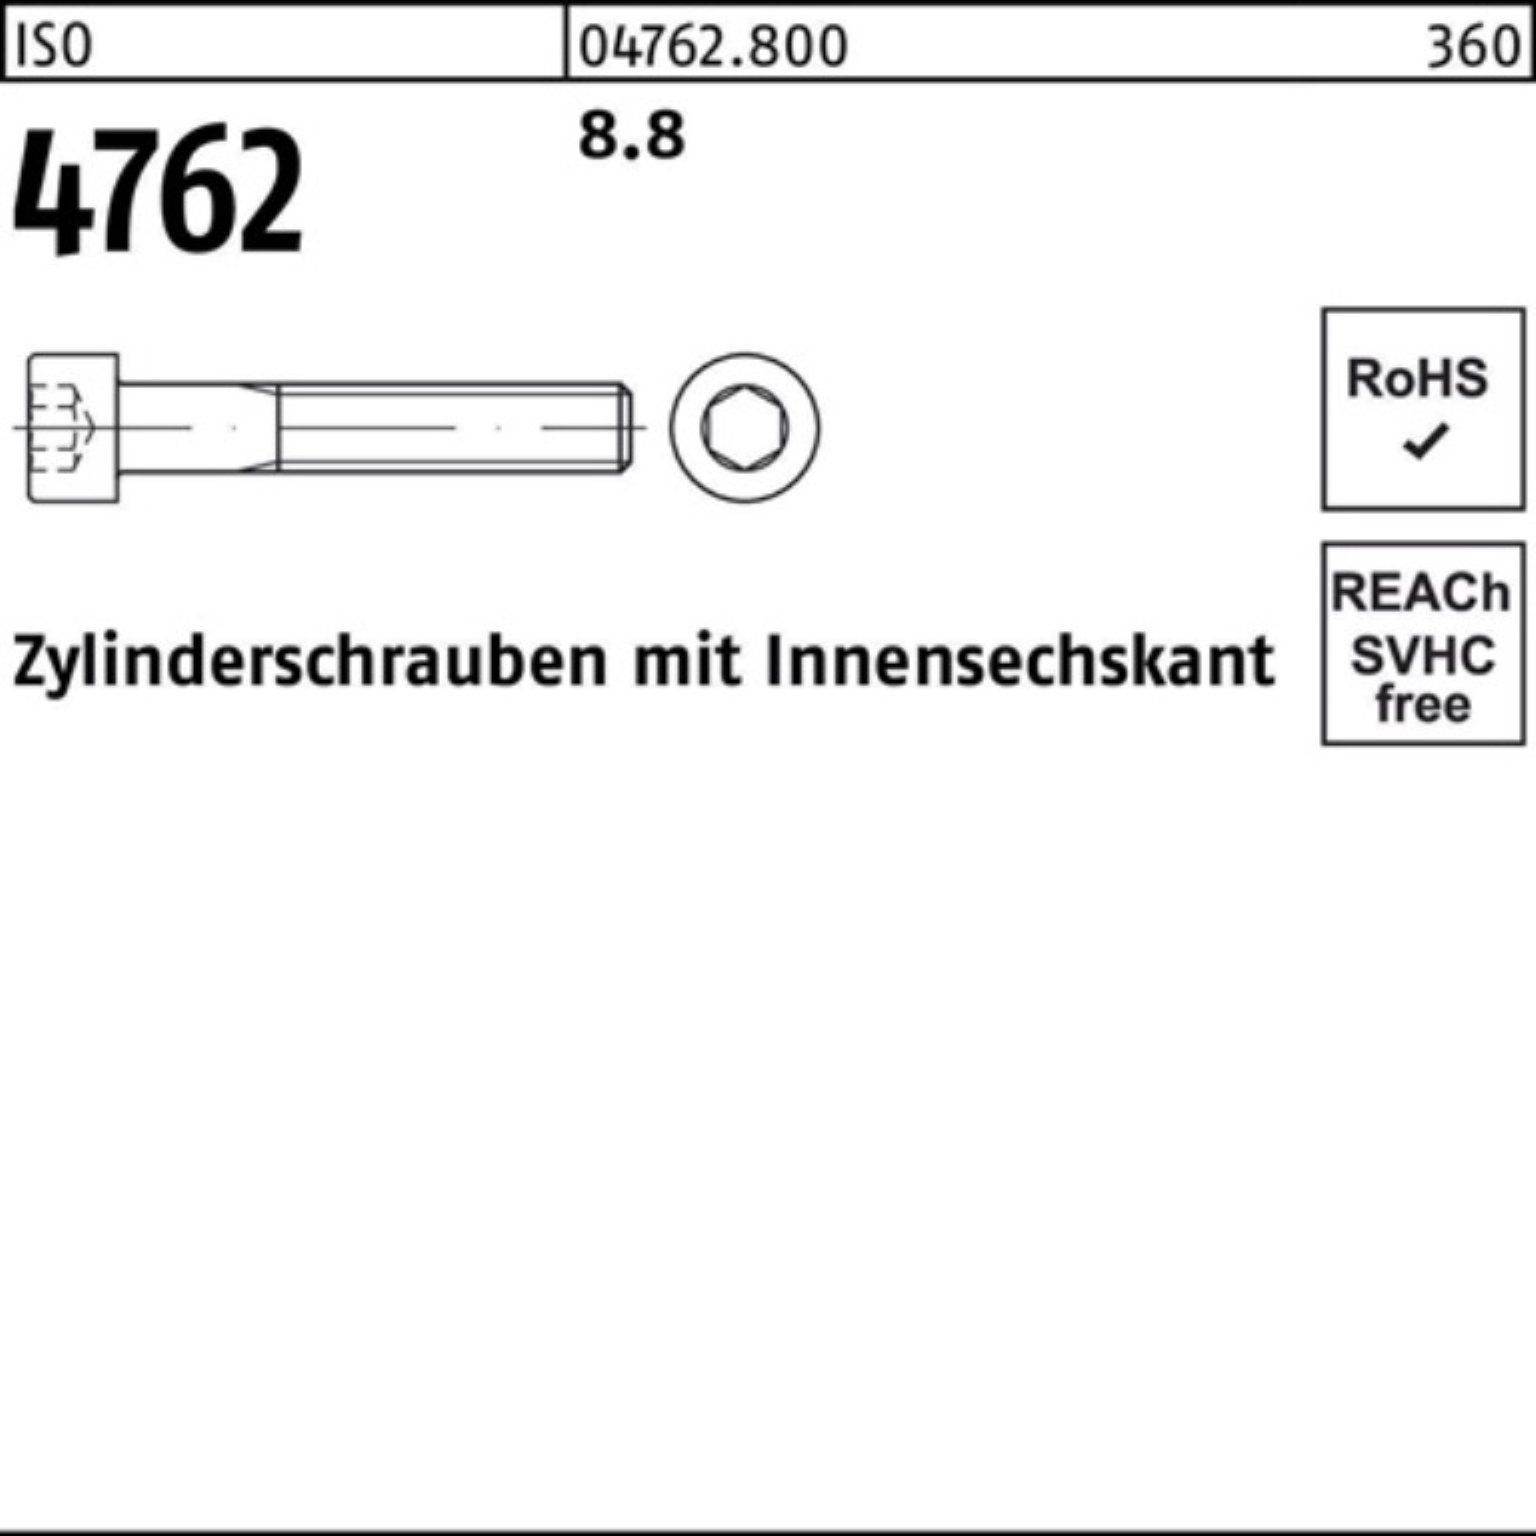 Zylinderschraube I Innen-6kt M36x 4762 Pack 1 Reyher 8.8 Stück Zylinderschraube 180 100er ISO